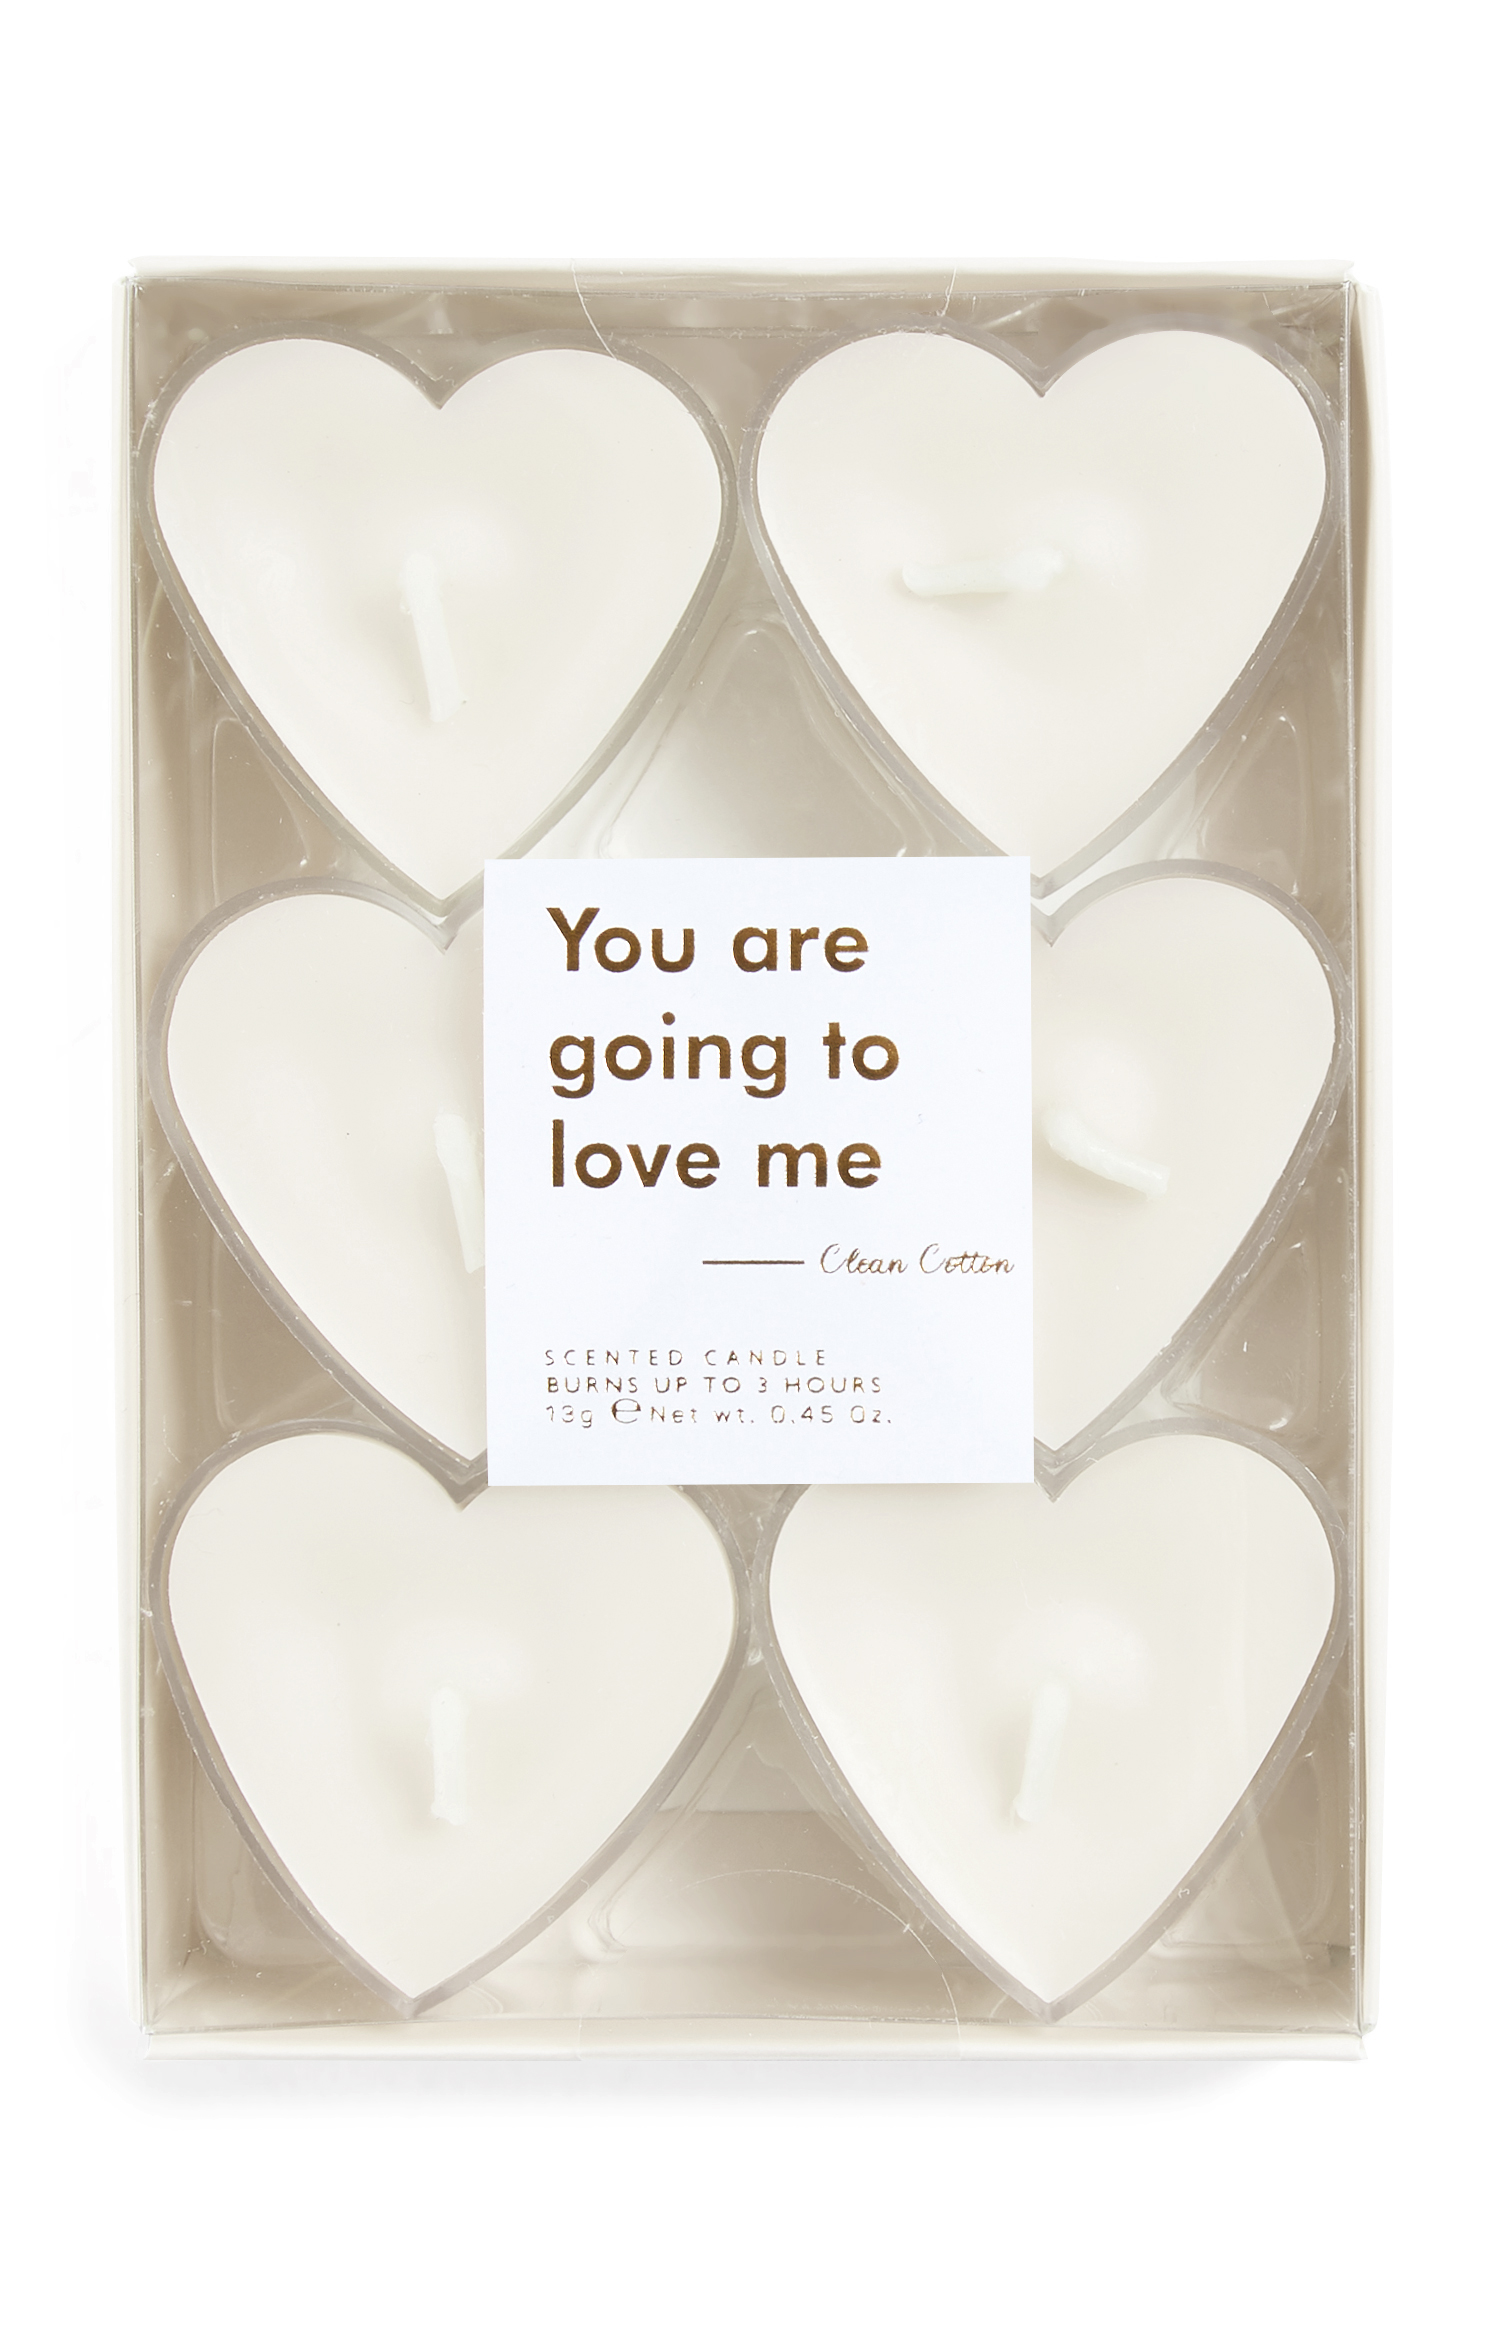 Regalos de San Valentín, los mejores de Primark - primark kimball 1860502 01 white heart shaped tealights 1.50 2.5 24ec1